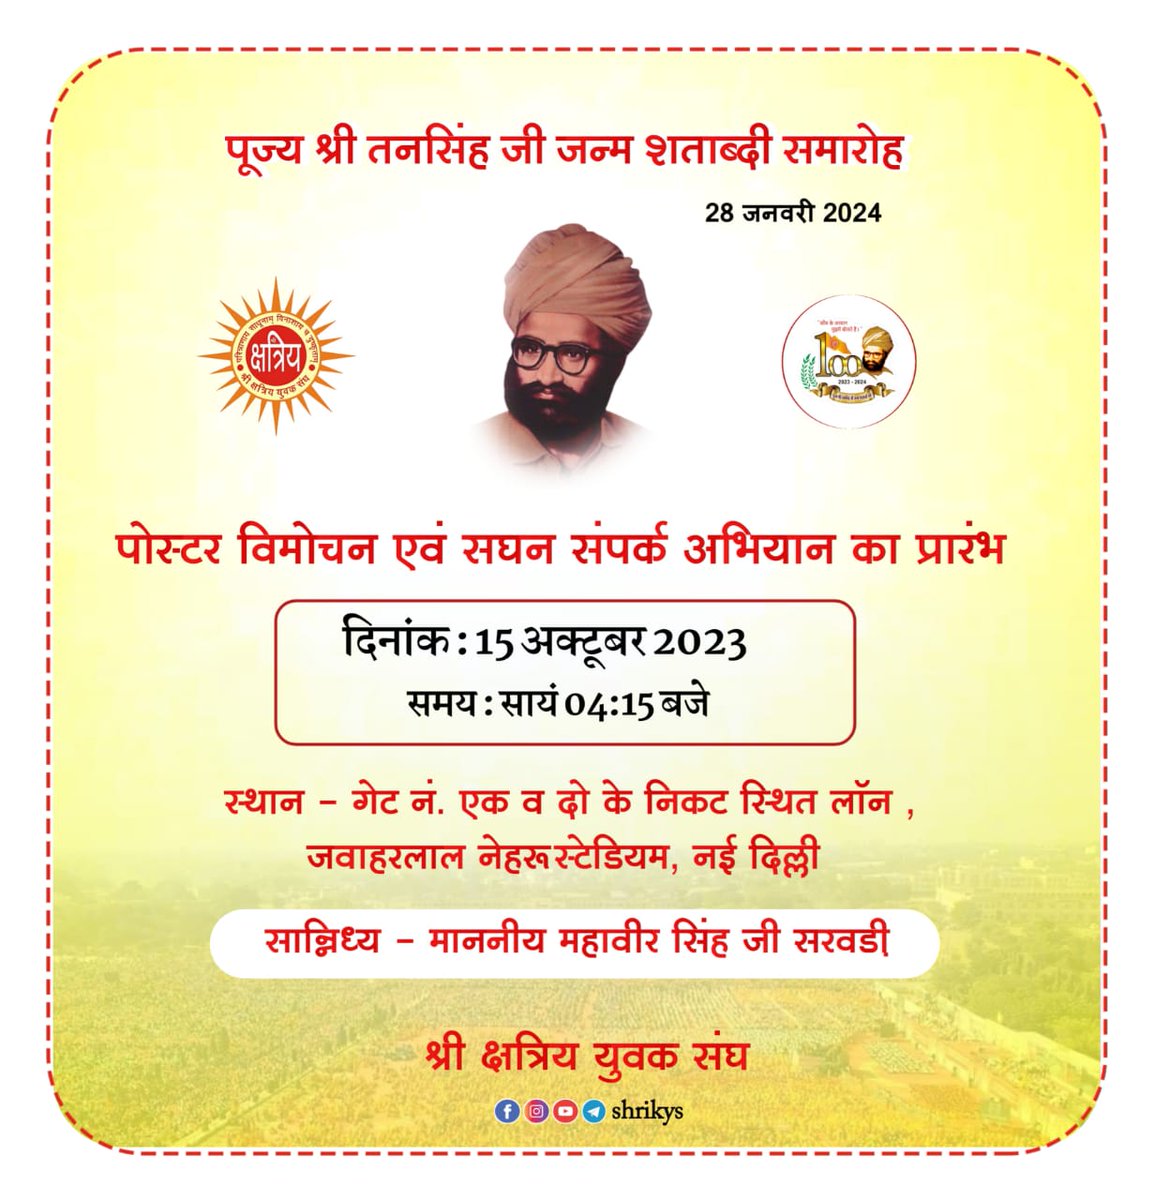 आगामी 28 जनवरी 2024 को नई दिल्ली में आयोजित पूज्य श्री तनसिंह जी जन्म शताब्दी समारोह का पोस्टर विमोचन एवं सघन संपर्क अभियान का शुभारंभ संघ के वरिष्ठ स्वयंसेवक माननीय श्री महावीर सिंह जी सरवड़ी के सान्निध्य में आगामी 15 अक्टूबर (रविवार) को नवरात्रा स्थापना के शुभ अवसर पर नई दिल्ली…